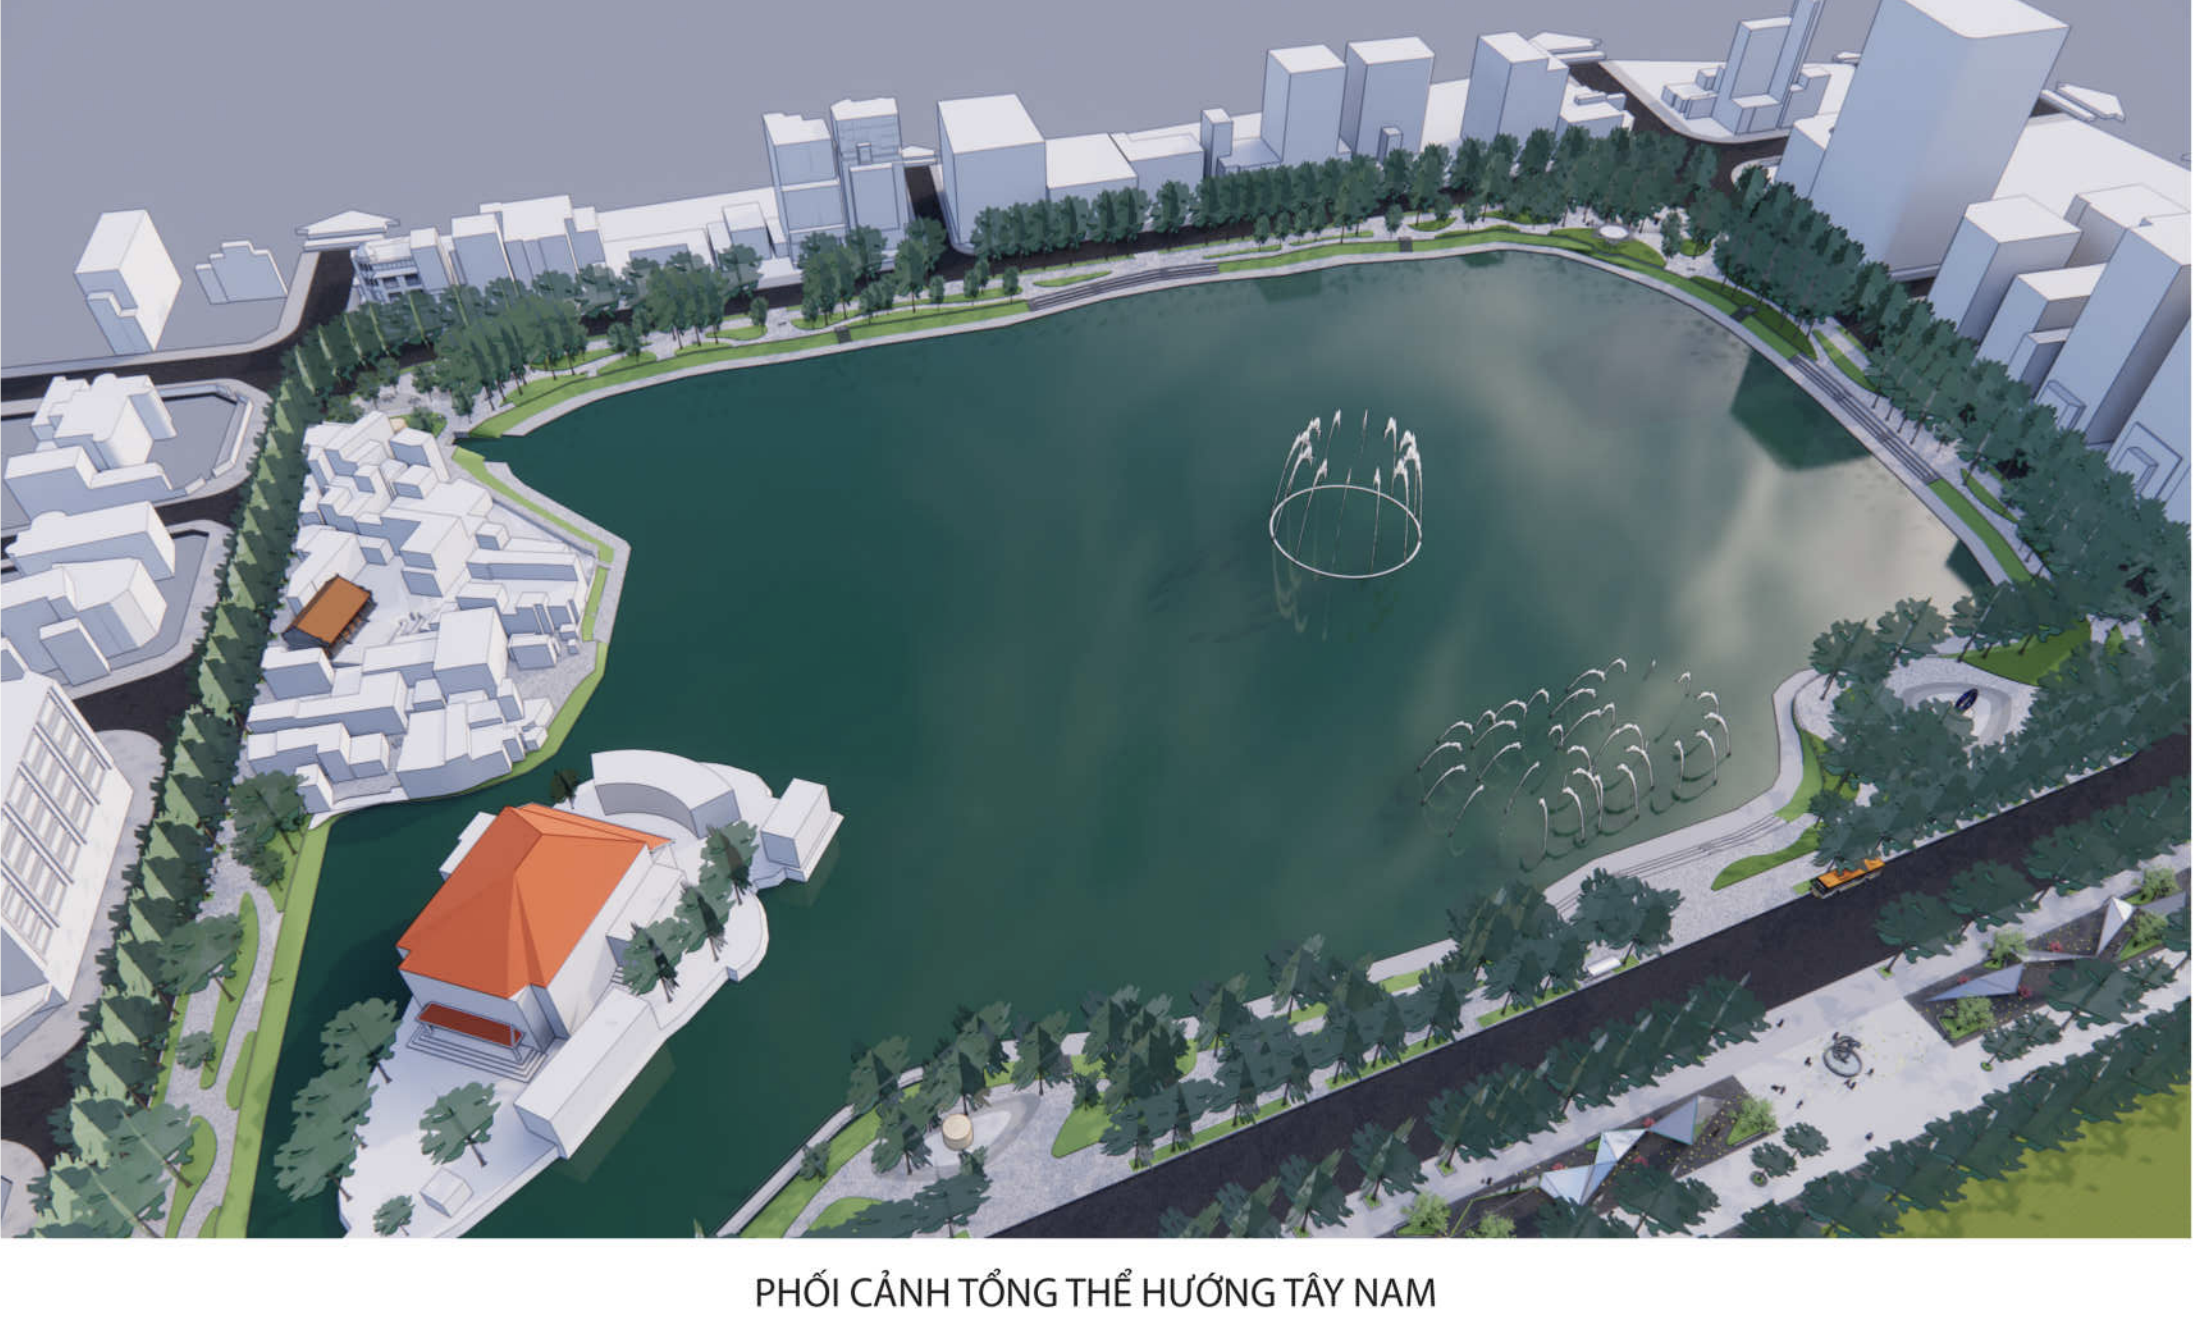 Xã hội - Hiện trạng hồ Thiền Quang trước đề xuất làm 5 quảng trường xung quanh